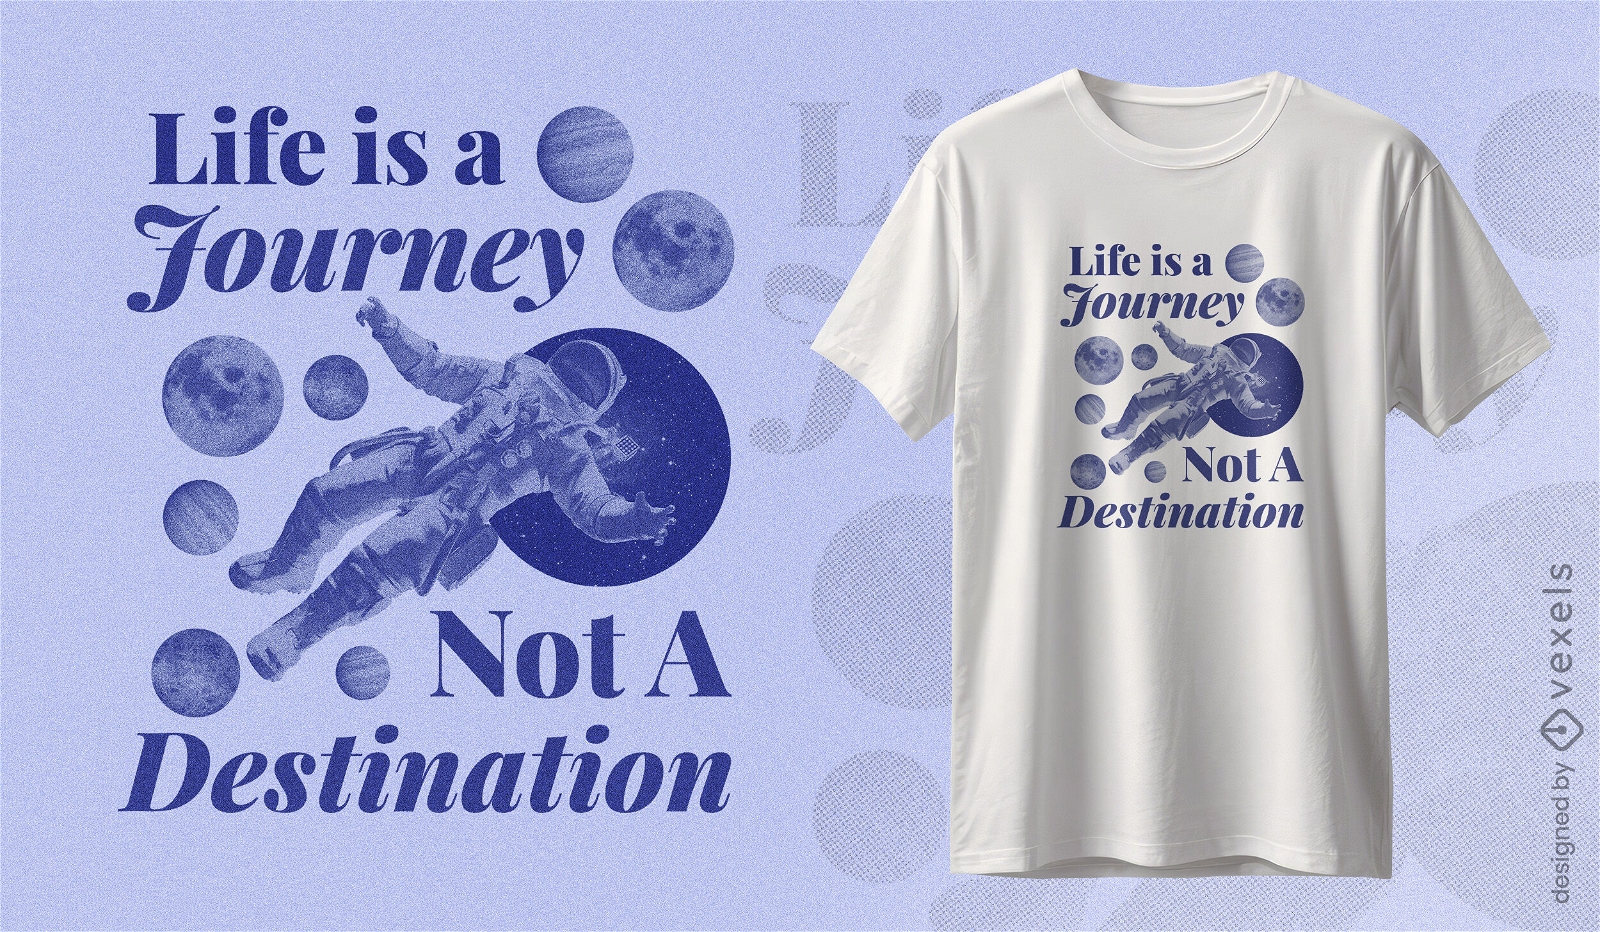 La vida es un viaje, no un dise?o de camiseta de destino.